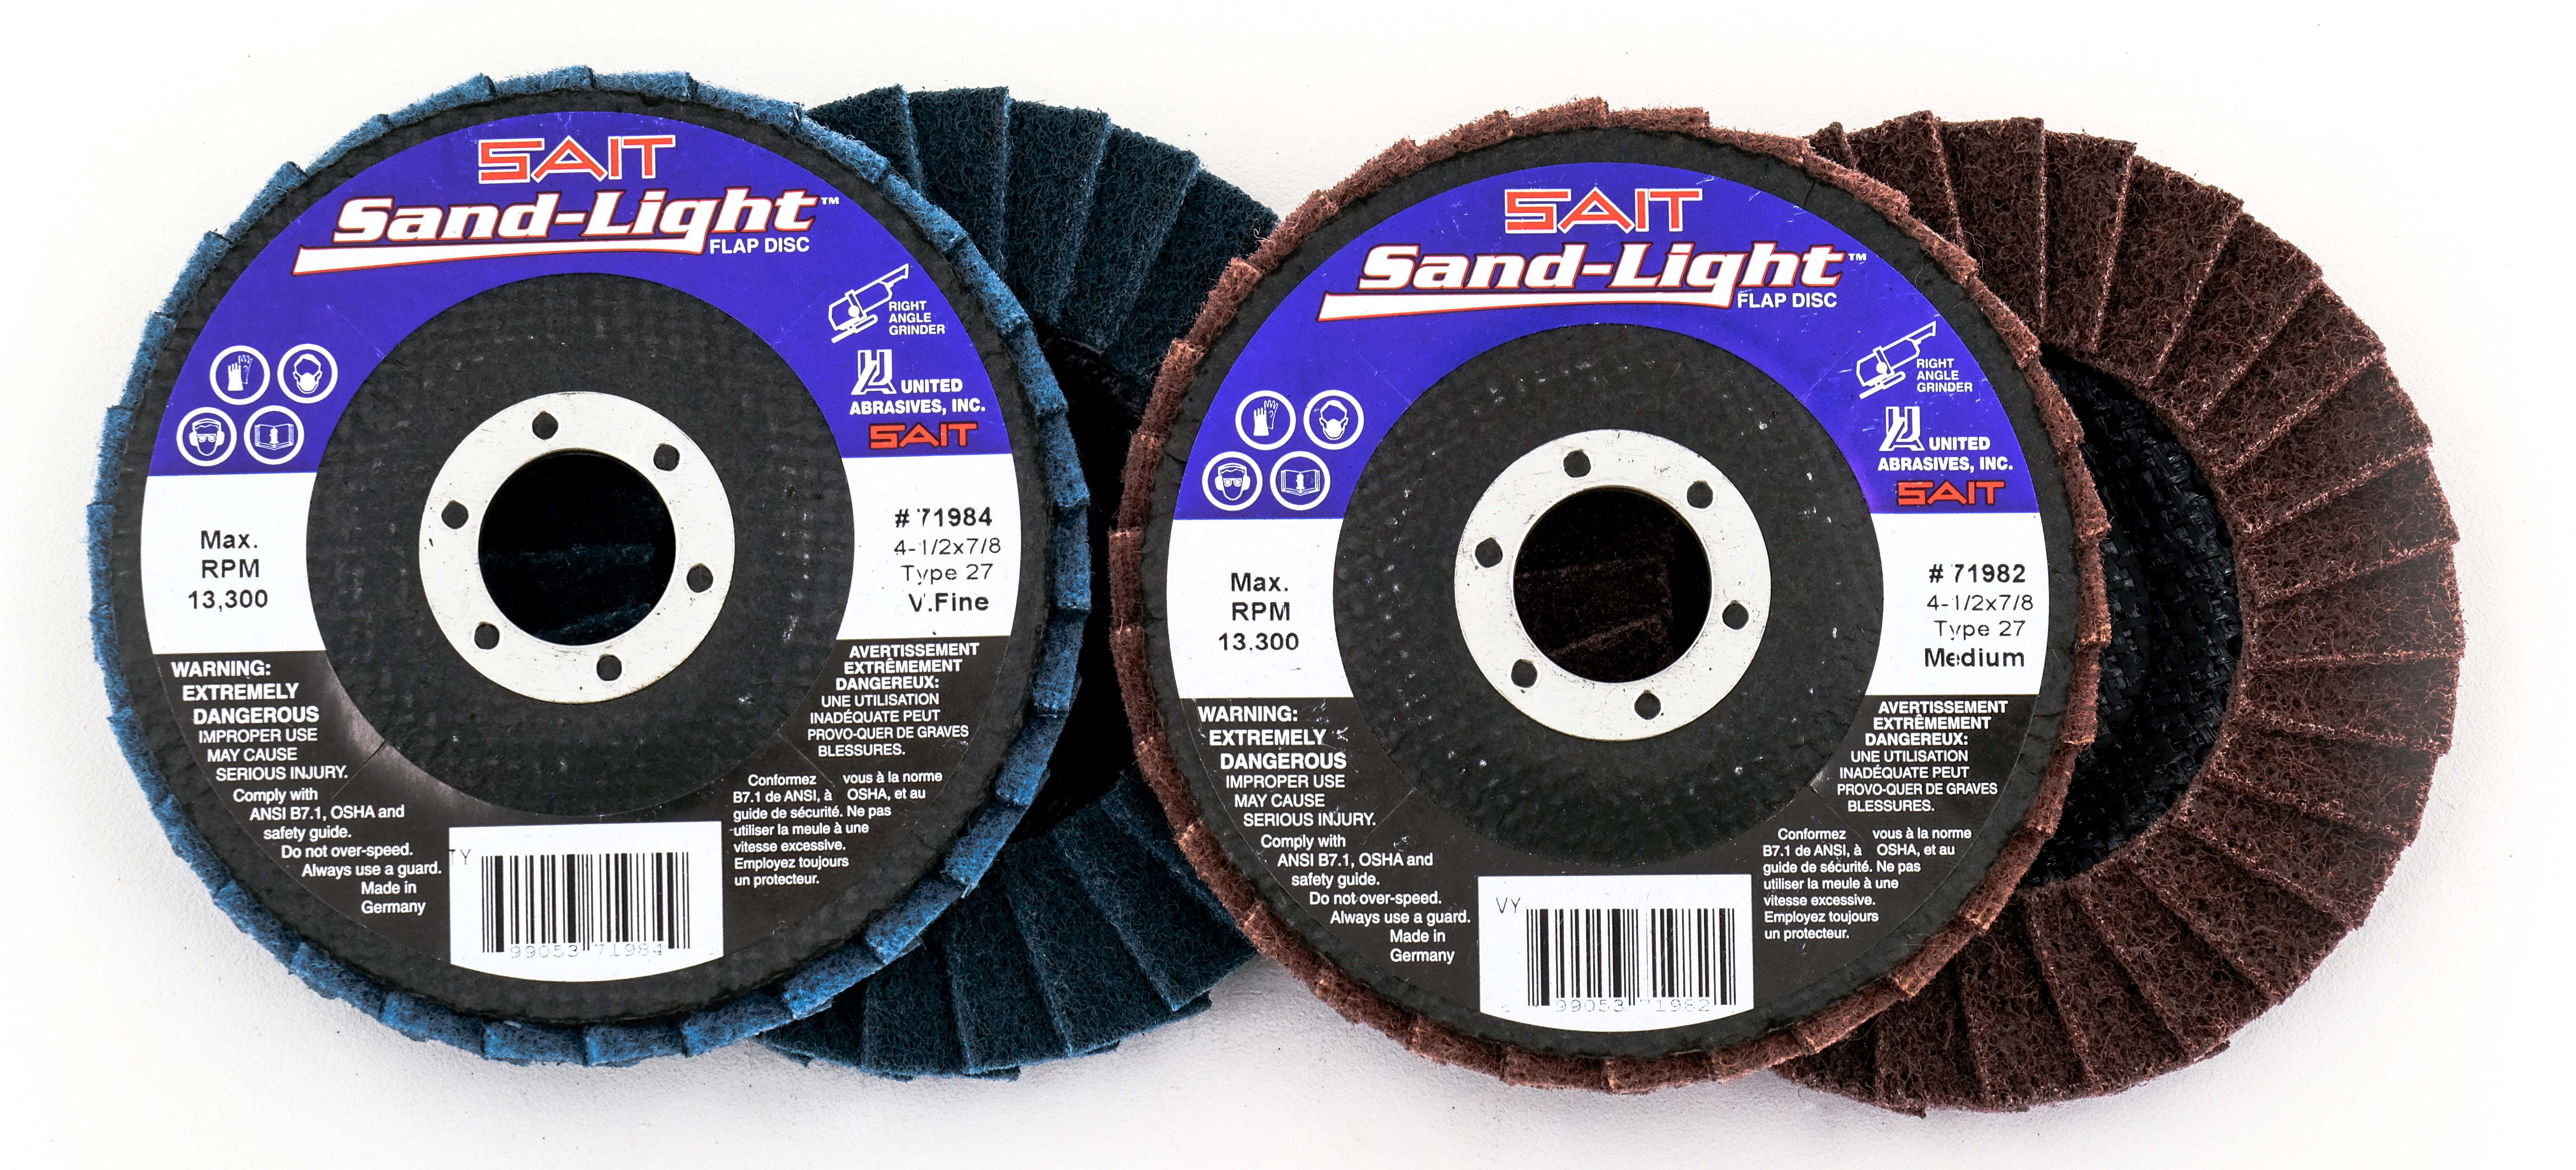 4-1/2x7/8 SANDLT FLAP DISC CRS - Flap Discs